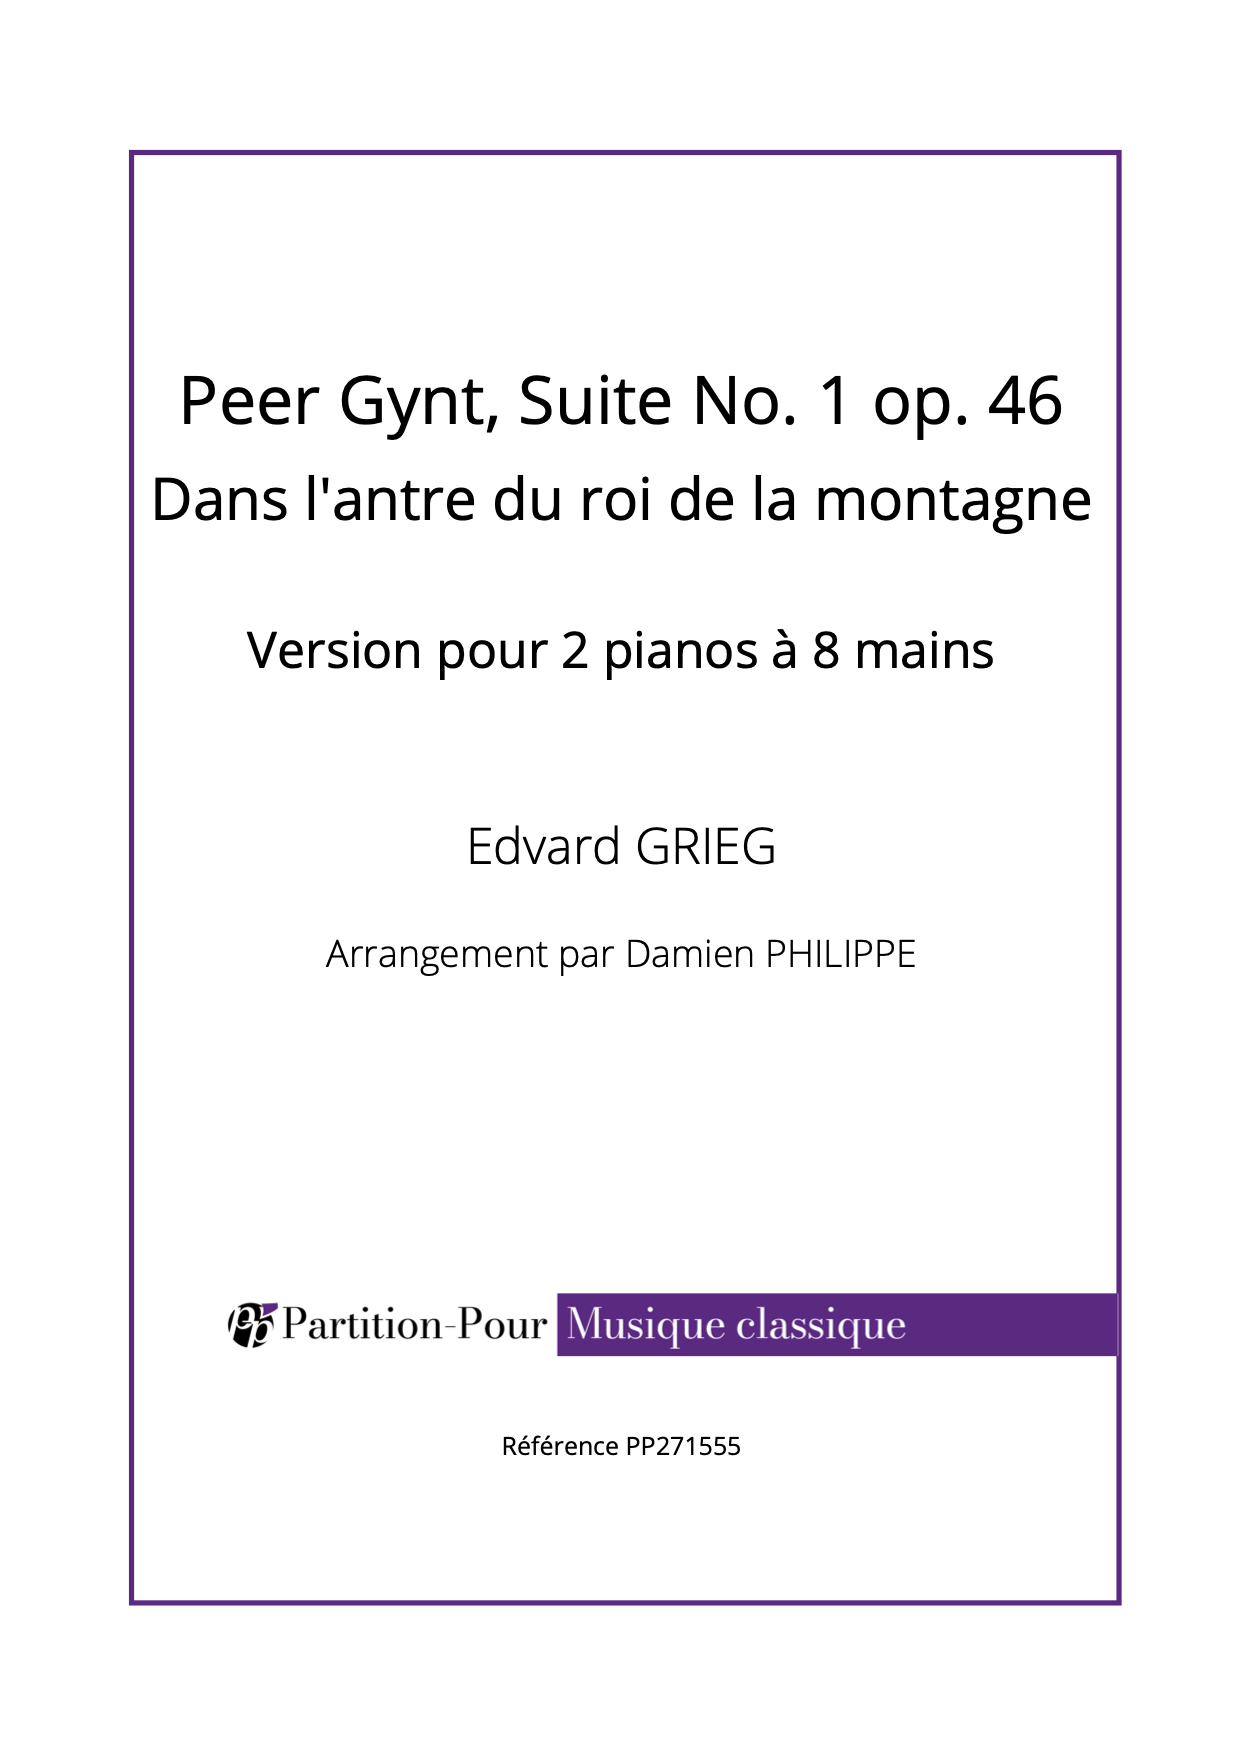 PP271555 Grieg E - Peer Gynt Suite No 1 op 46 - Dans l'antre du roi de la montagne - 2 pianos 8 mains -présentation